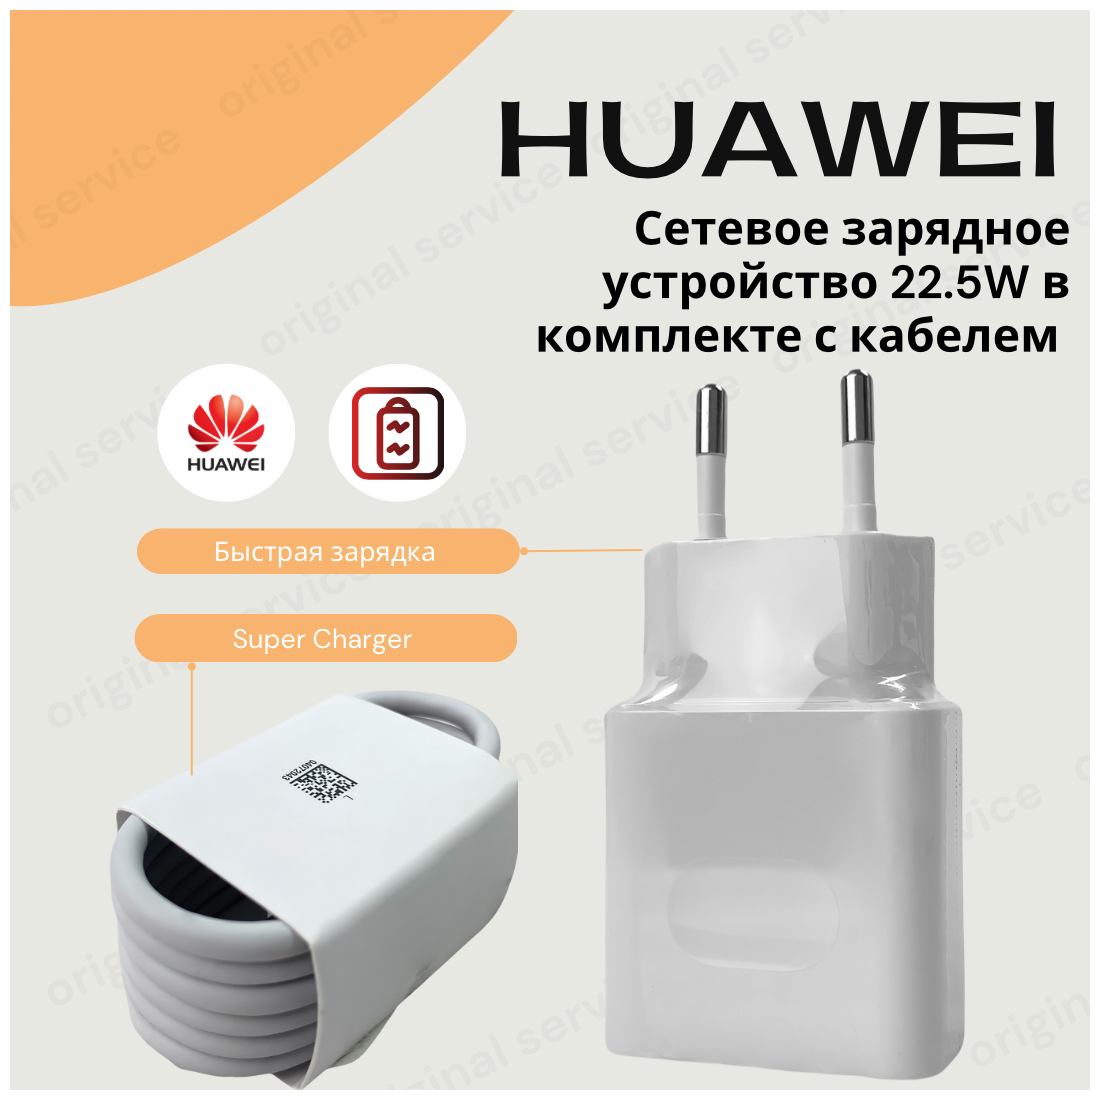 Сетевое зарядное устройство для Huawei c USB входом Max 22,5W в комплекте с кабелем 6a.